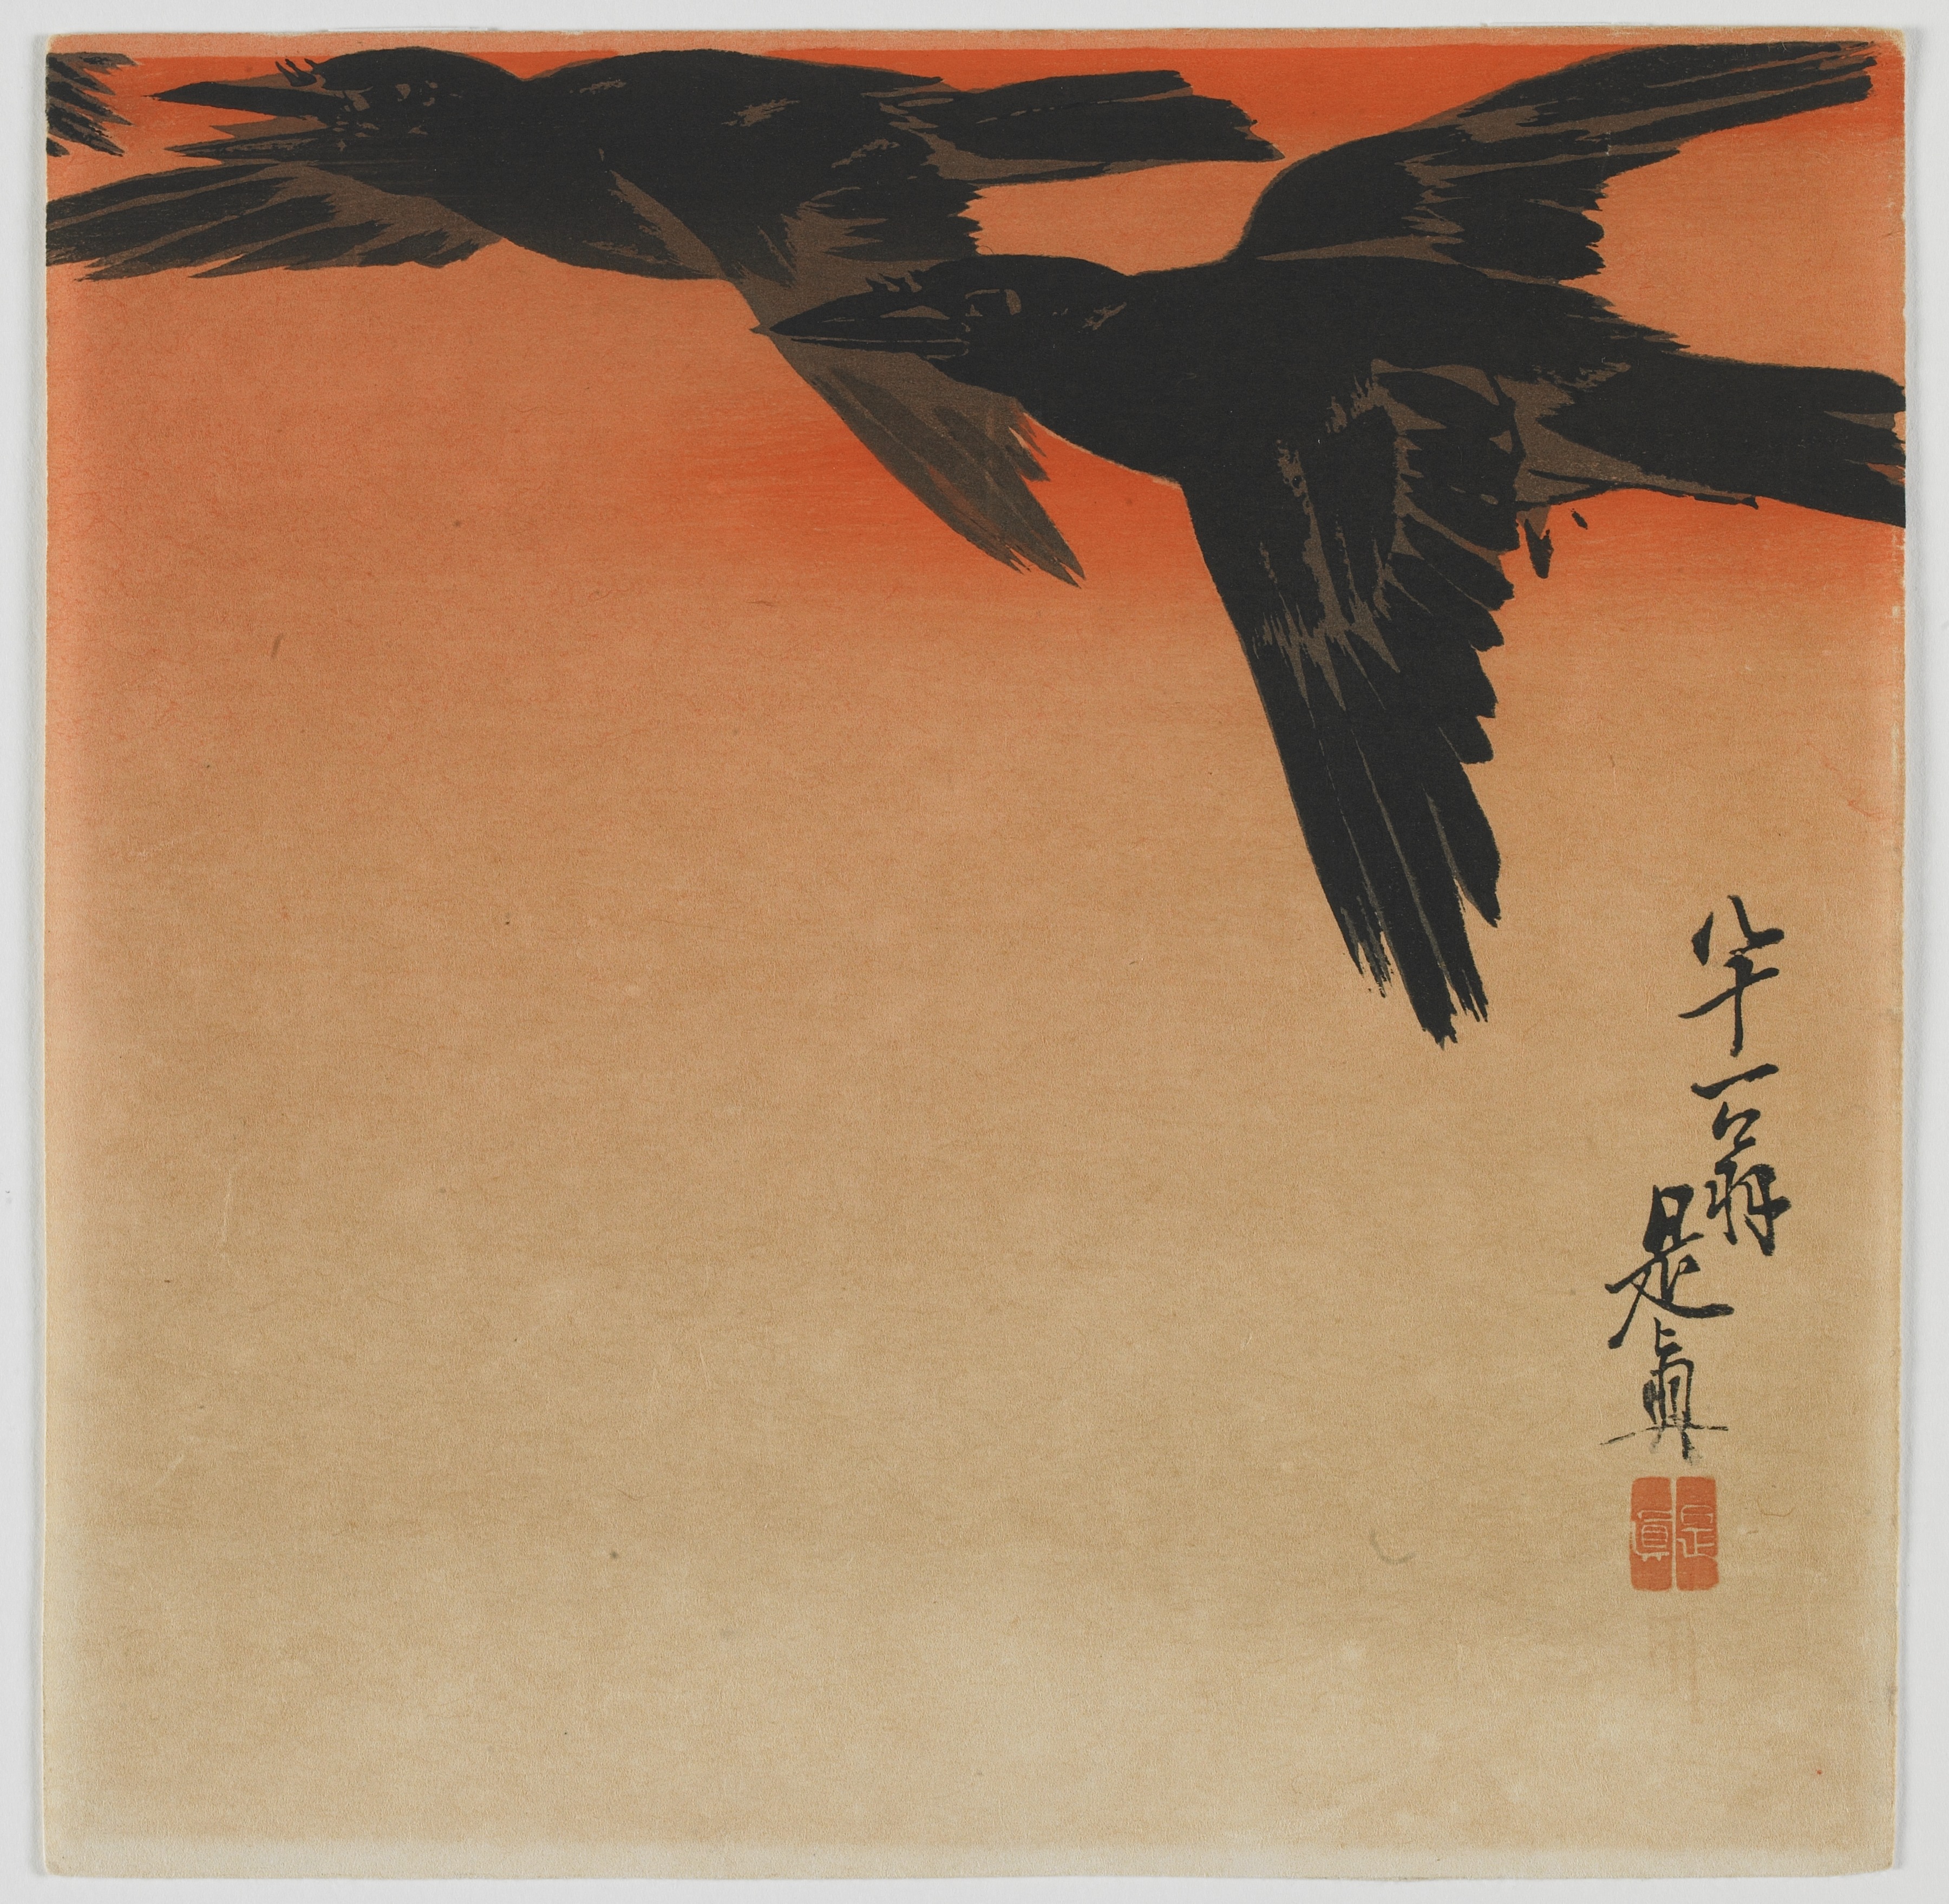 노을의 까마귀 by Shibata Zeshin - 19세기 후반 - 23.8 x 23.9 cm 